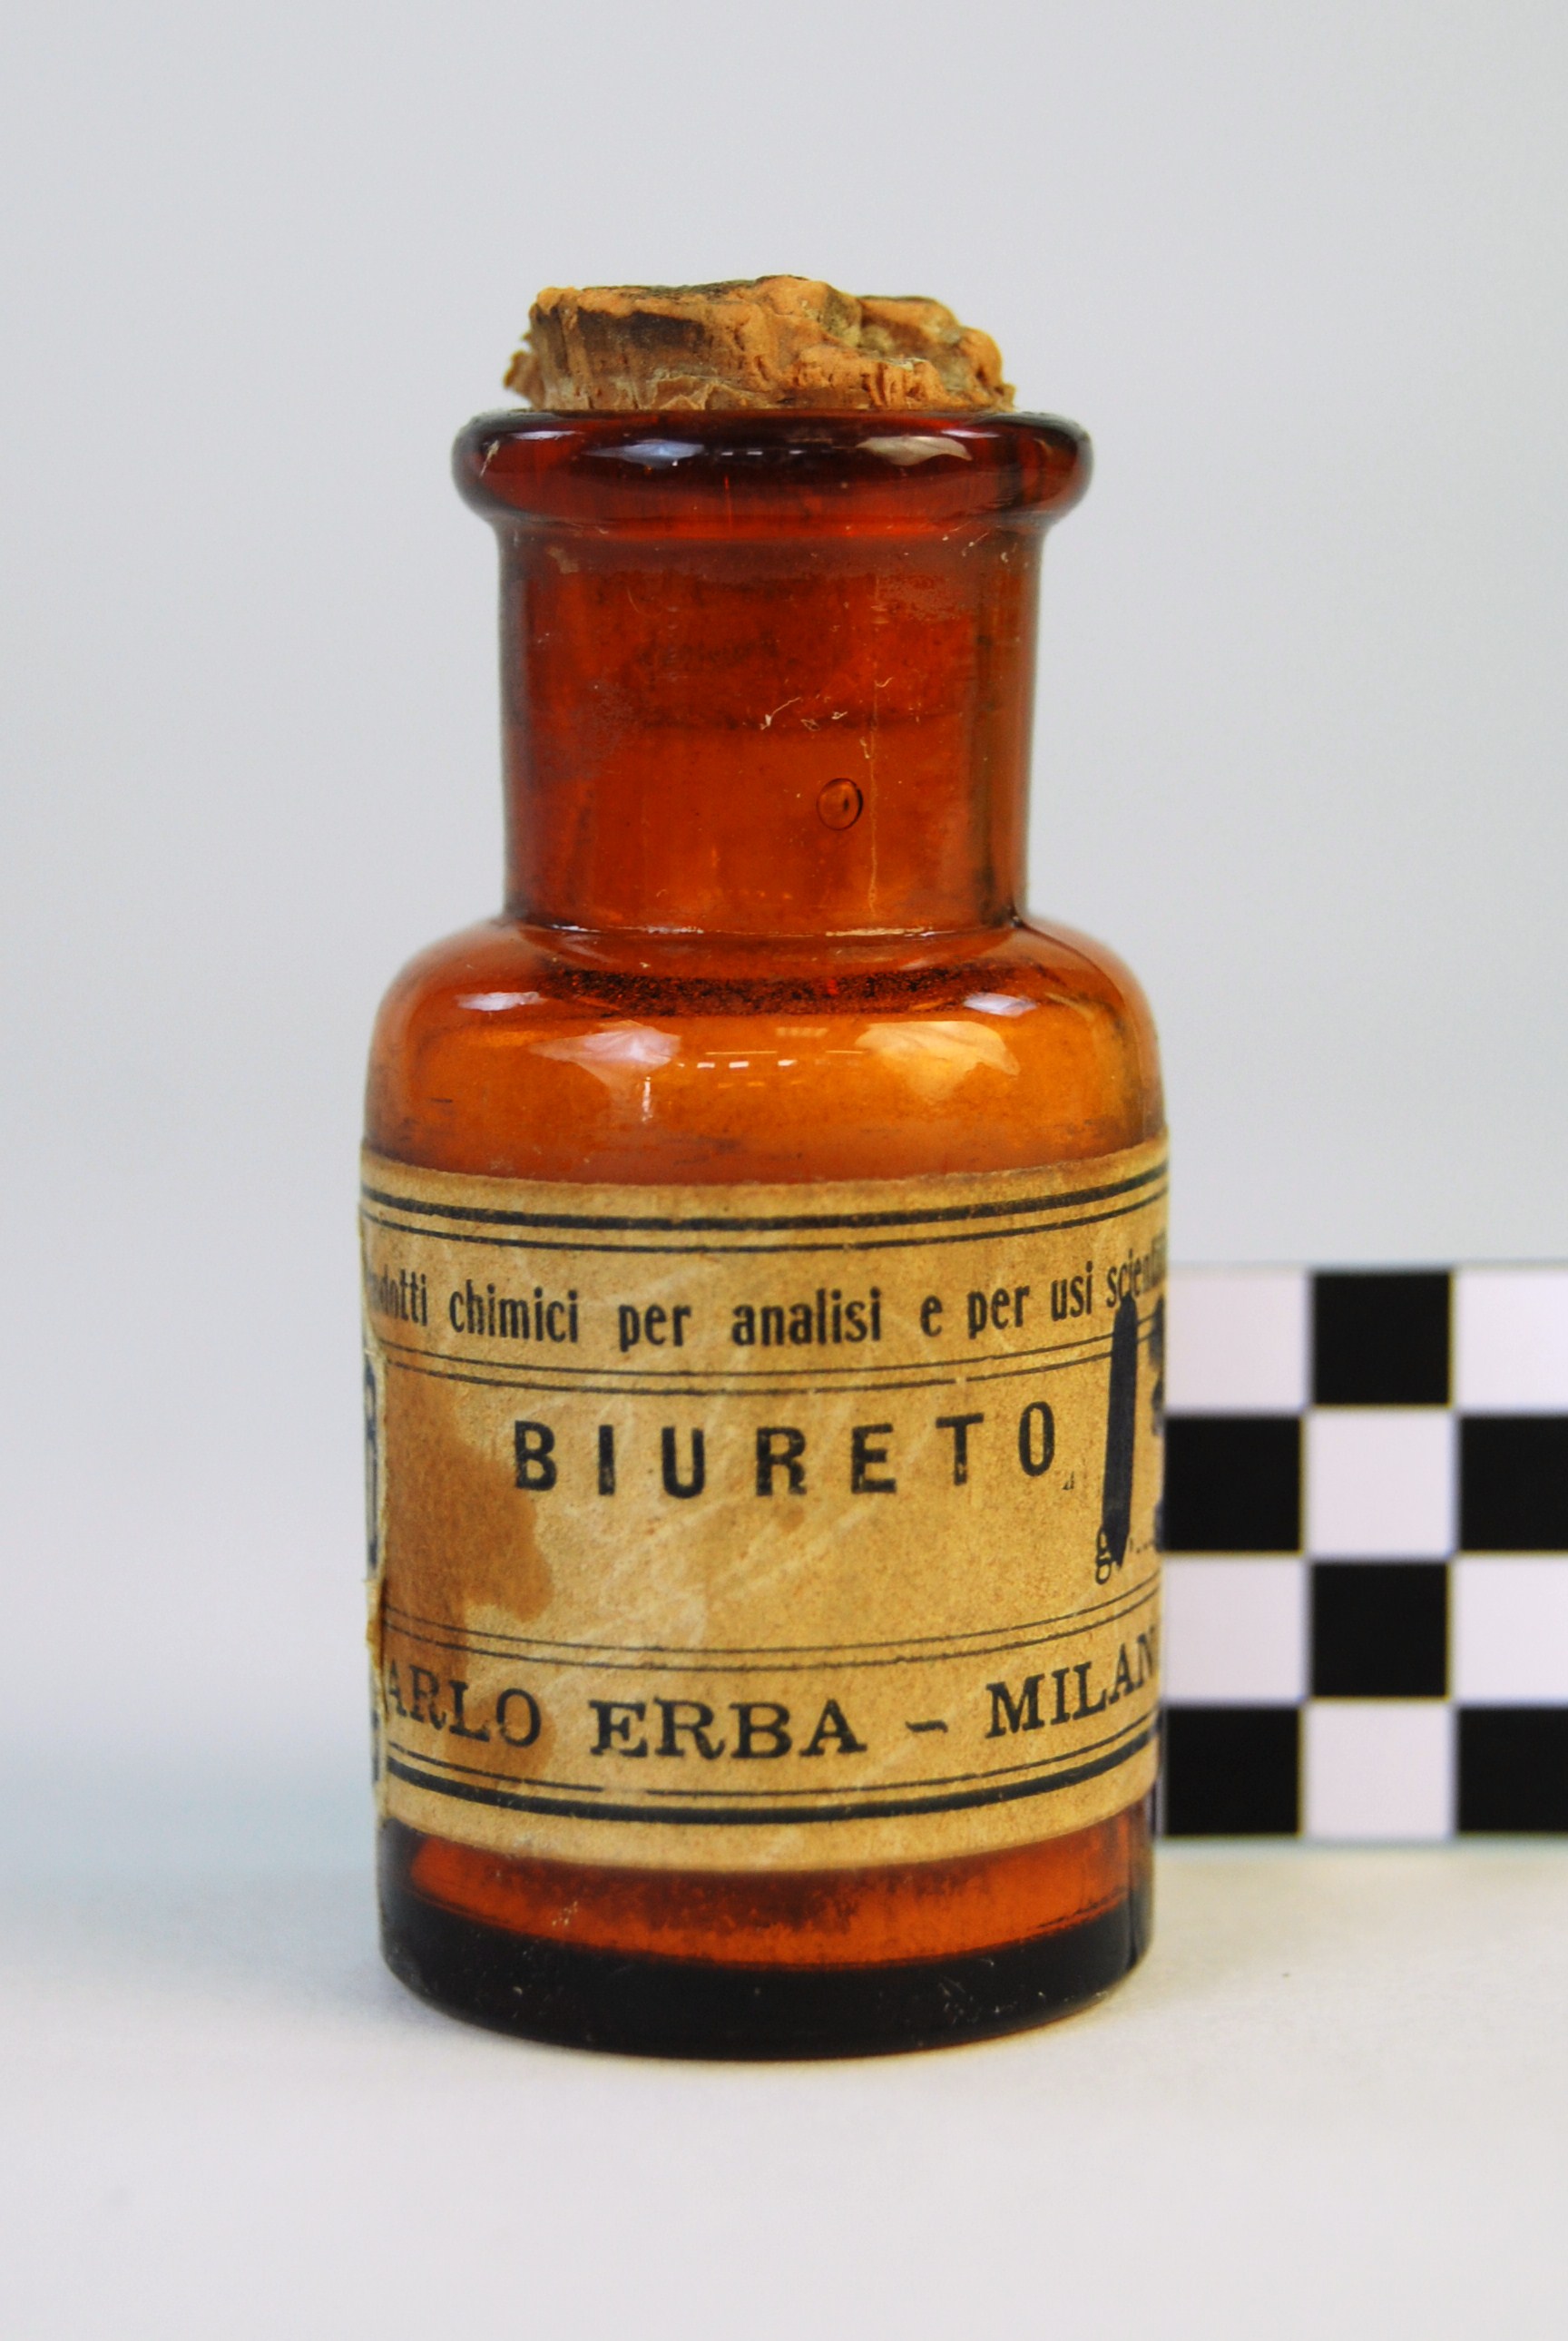 biureto (prodotto chimico, di sintesi) di Ugo Schiff (laboratorio) - scuola chimica fiorentina (metà/ inizio XIX/ XX)